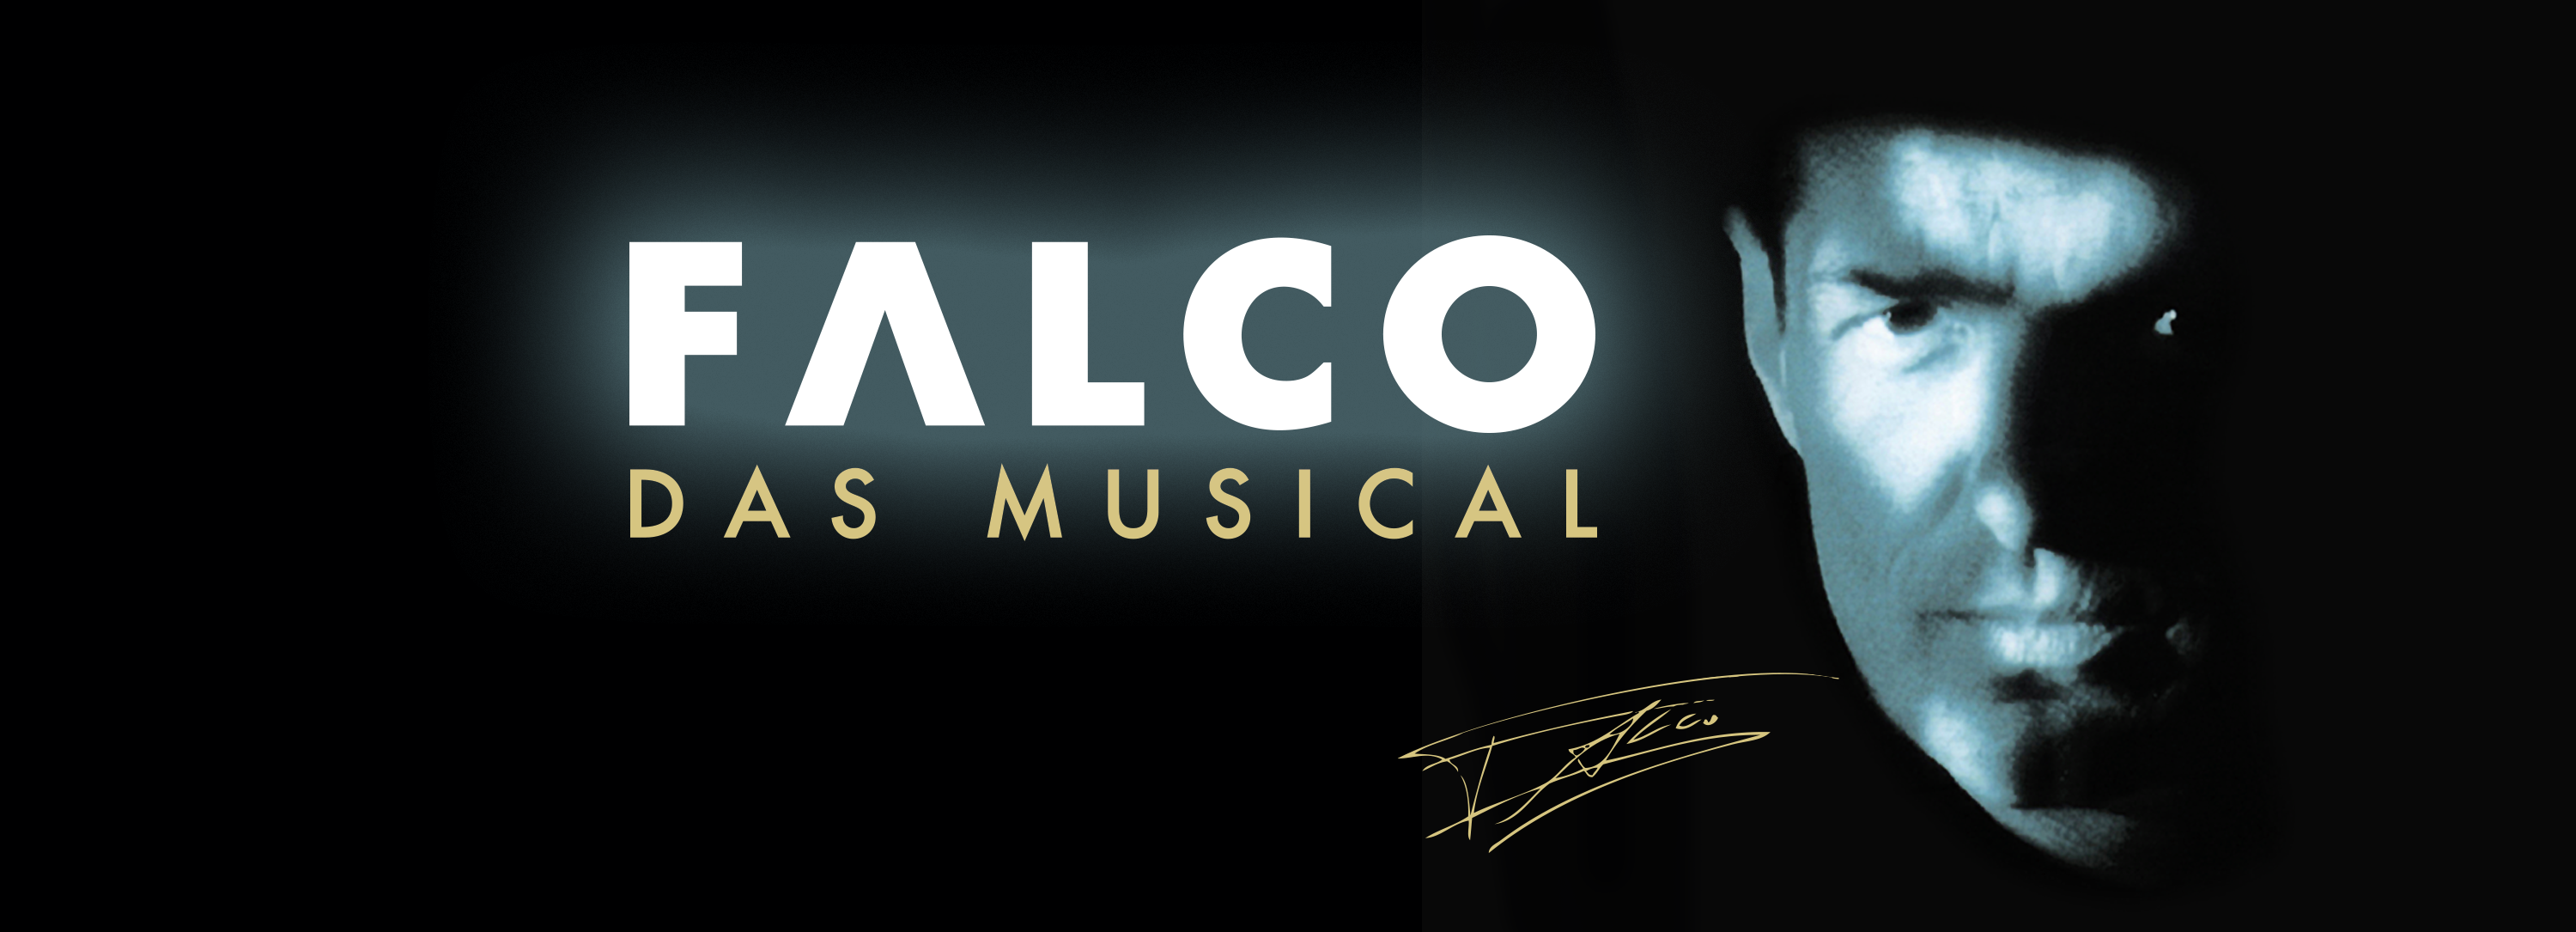 Falco – Das Musical im Deutschen Theater München